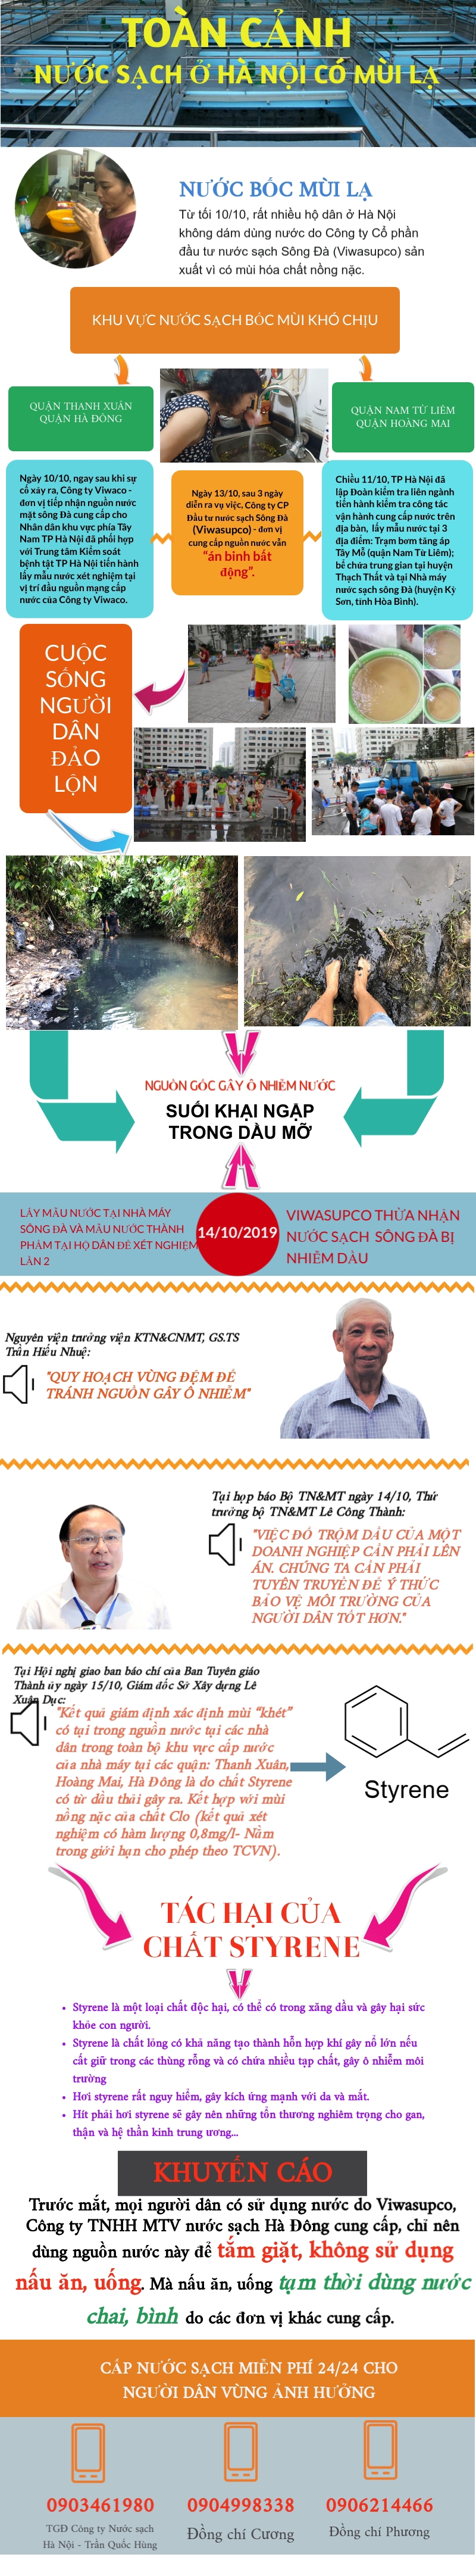 [Infographic] Toàn cảnh vụ nước sạch ở Hà Nội có mùi lạ - Ảnh 1